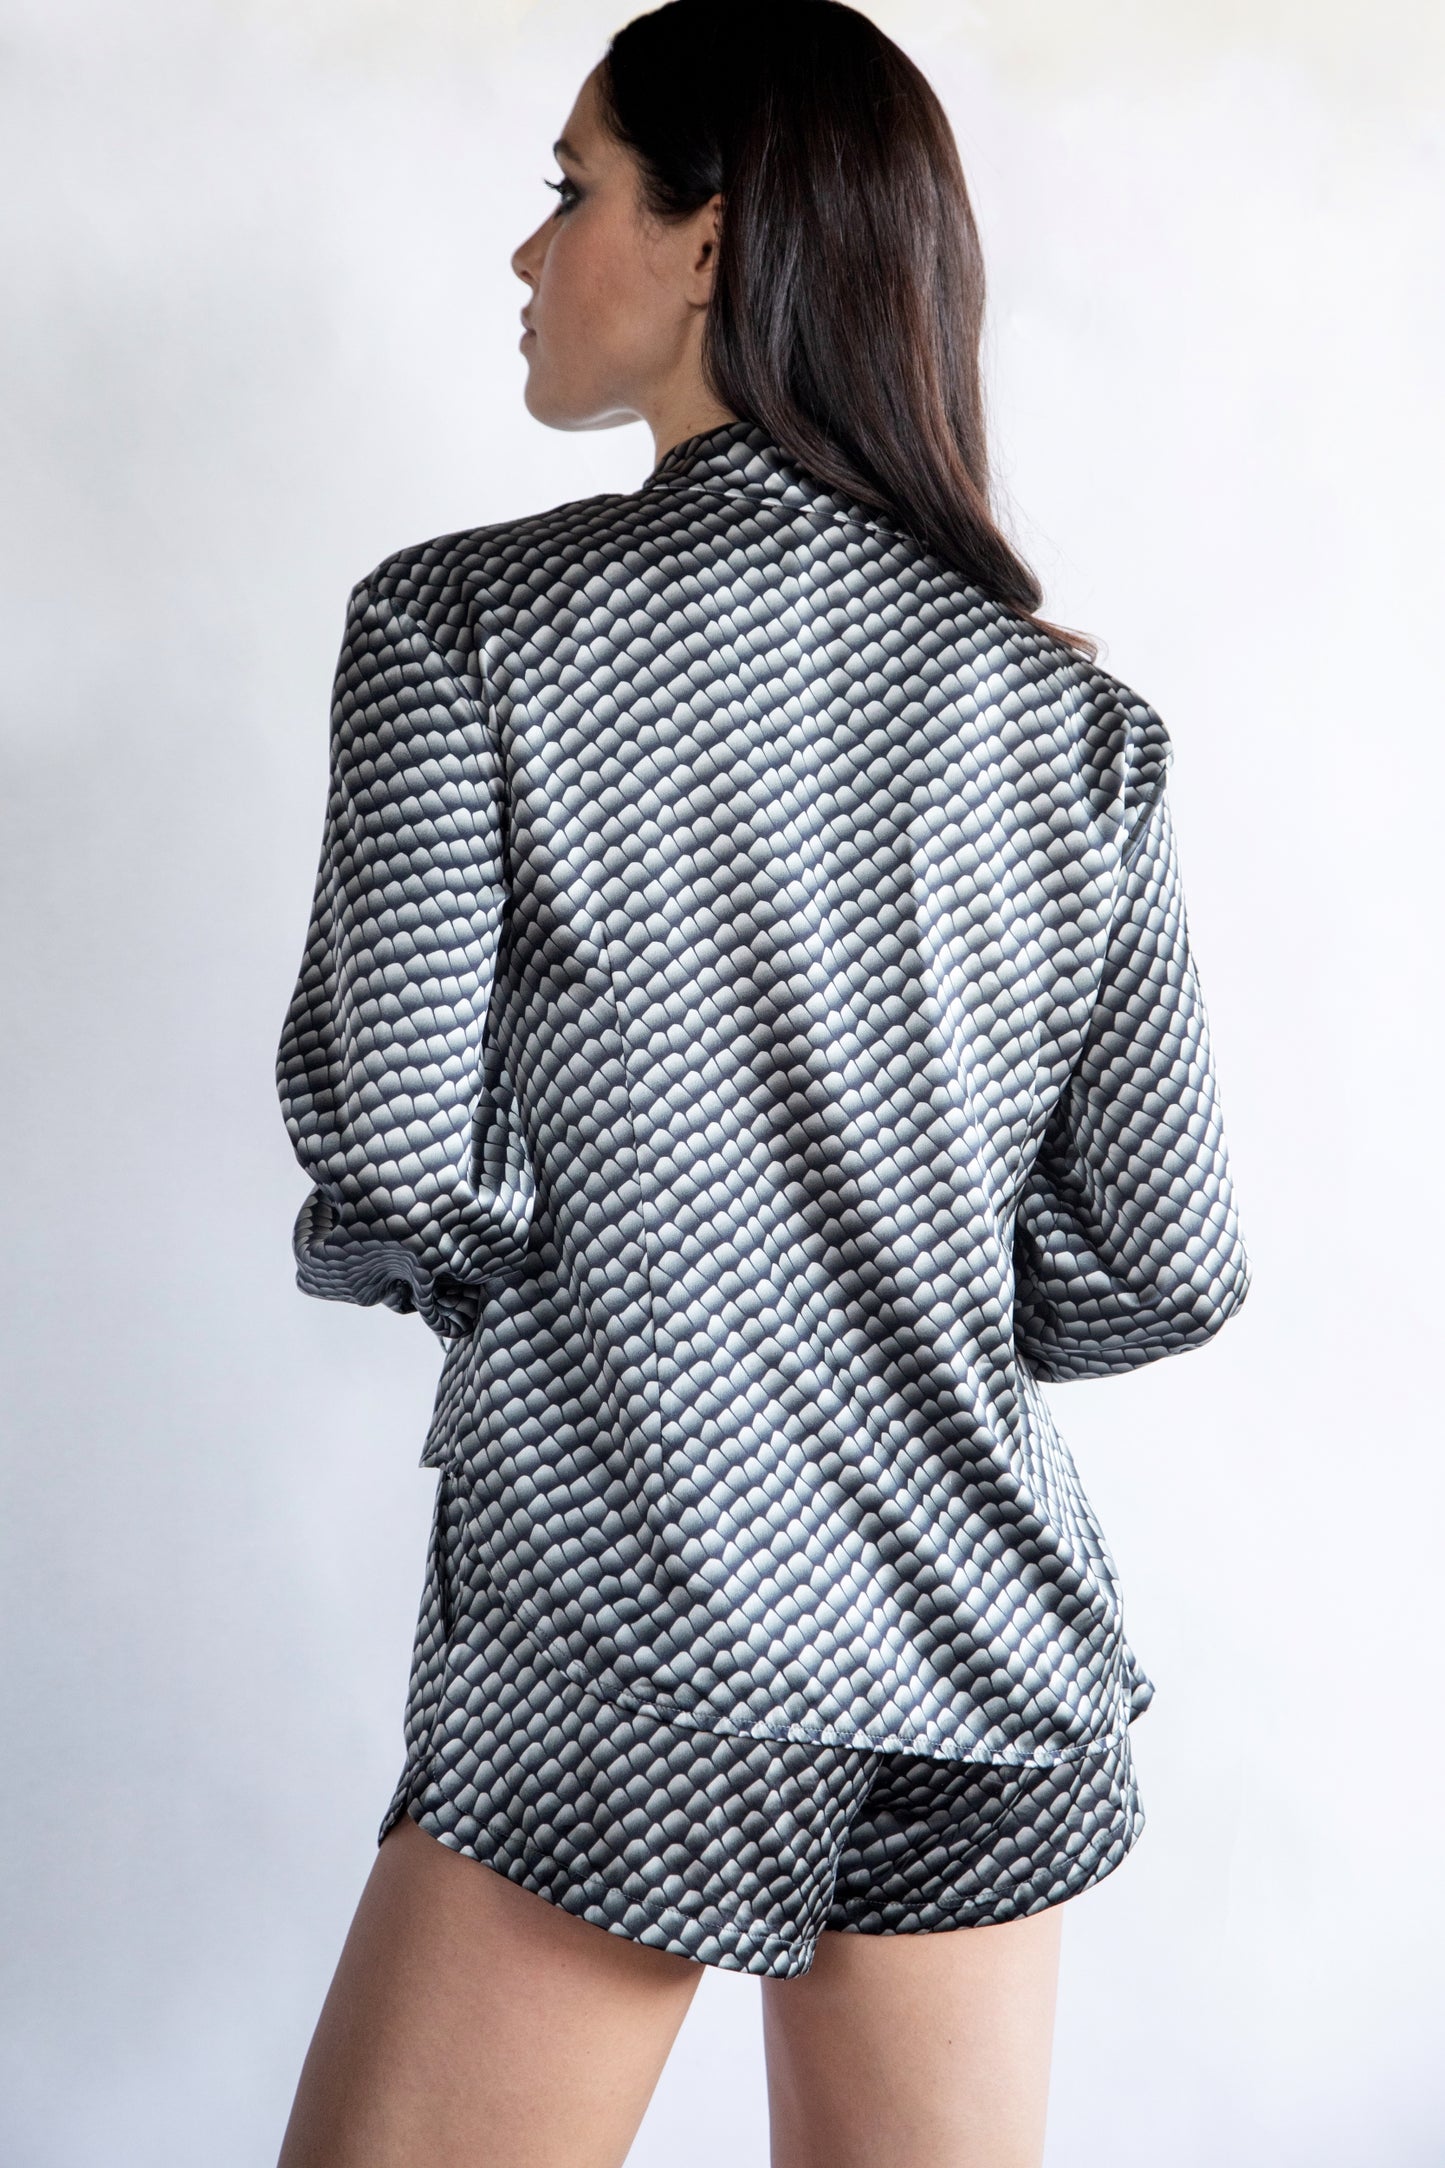 Printed shirt in 100% silk with "Black Reptile" motif